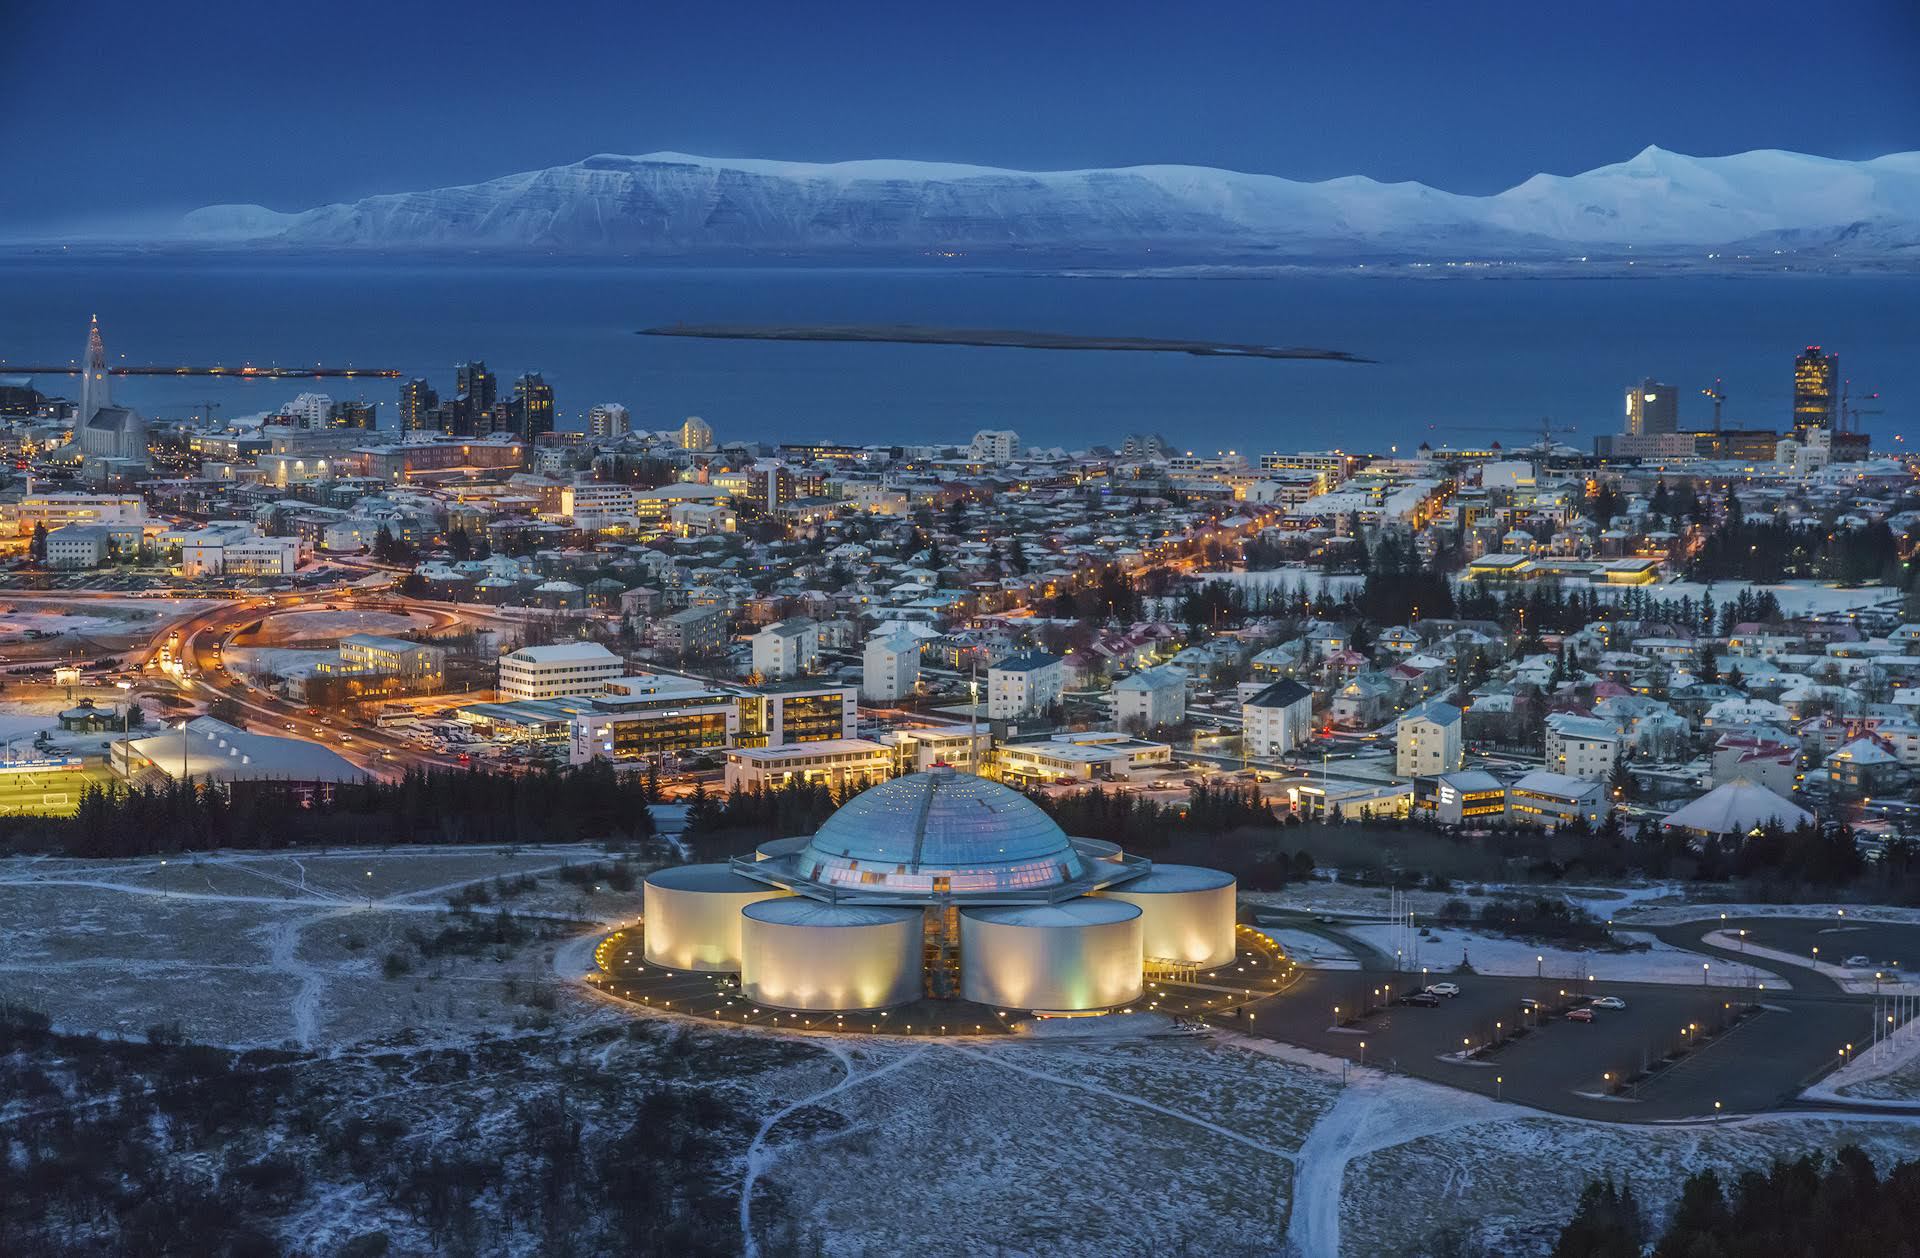 位于冰岛首都的珍珠楼,去过的游客都为她的建筑之美所倾倒!